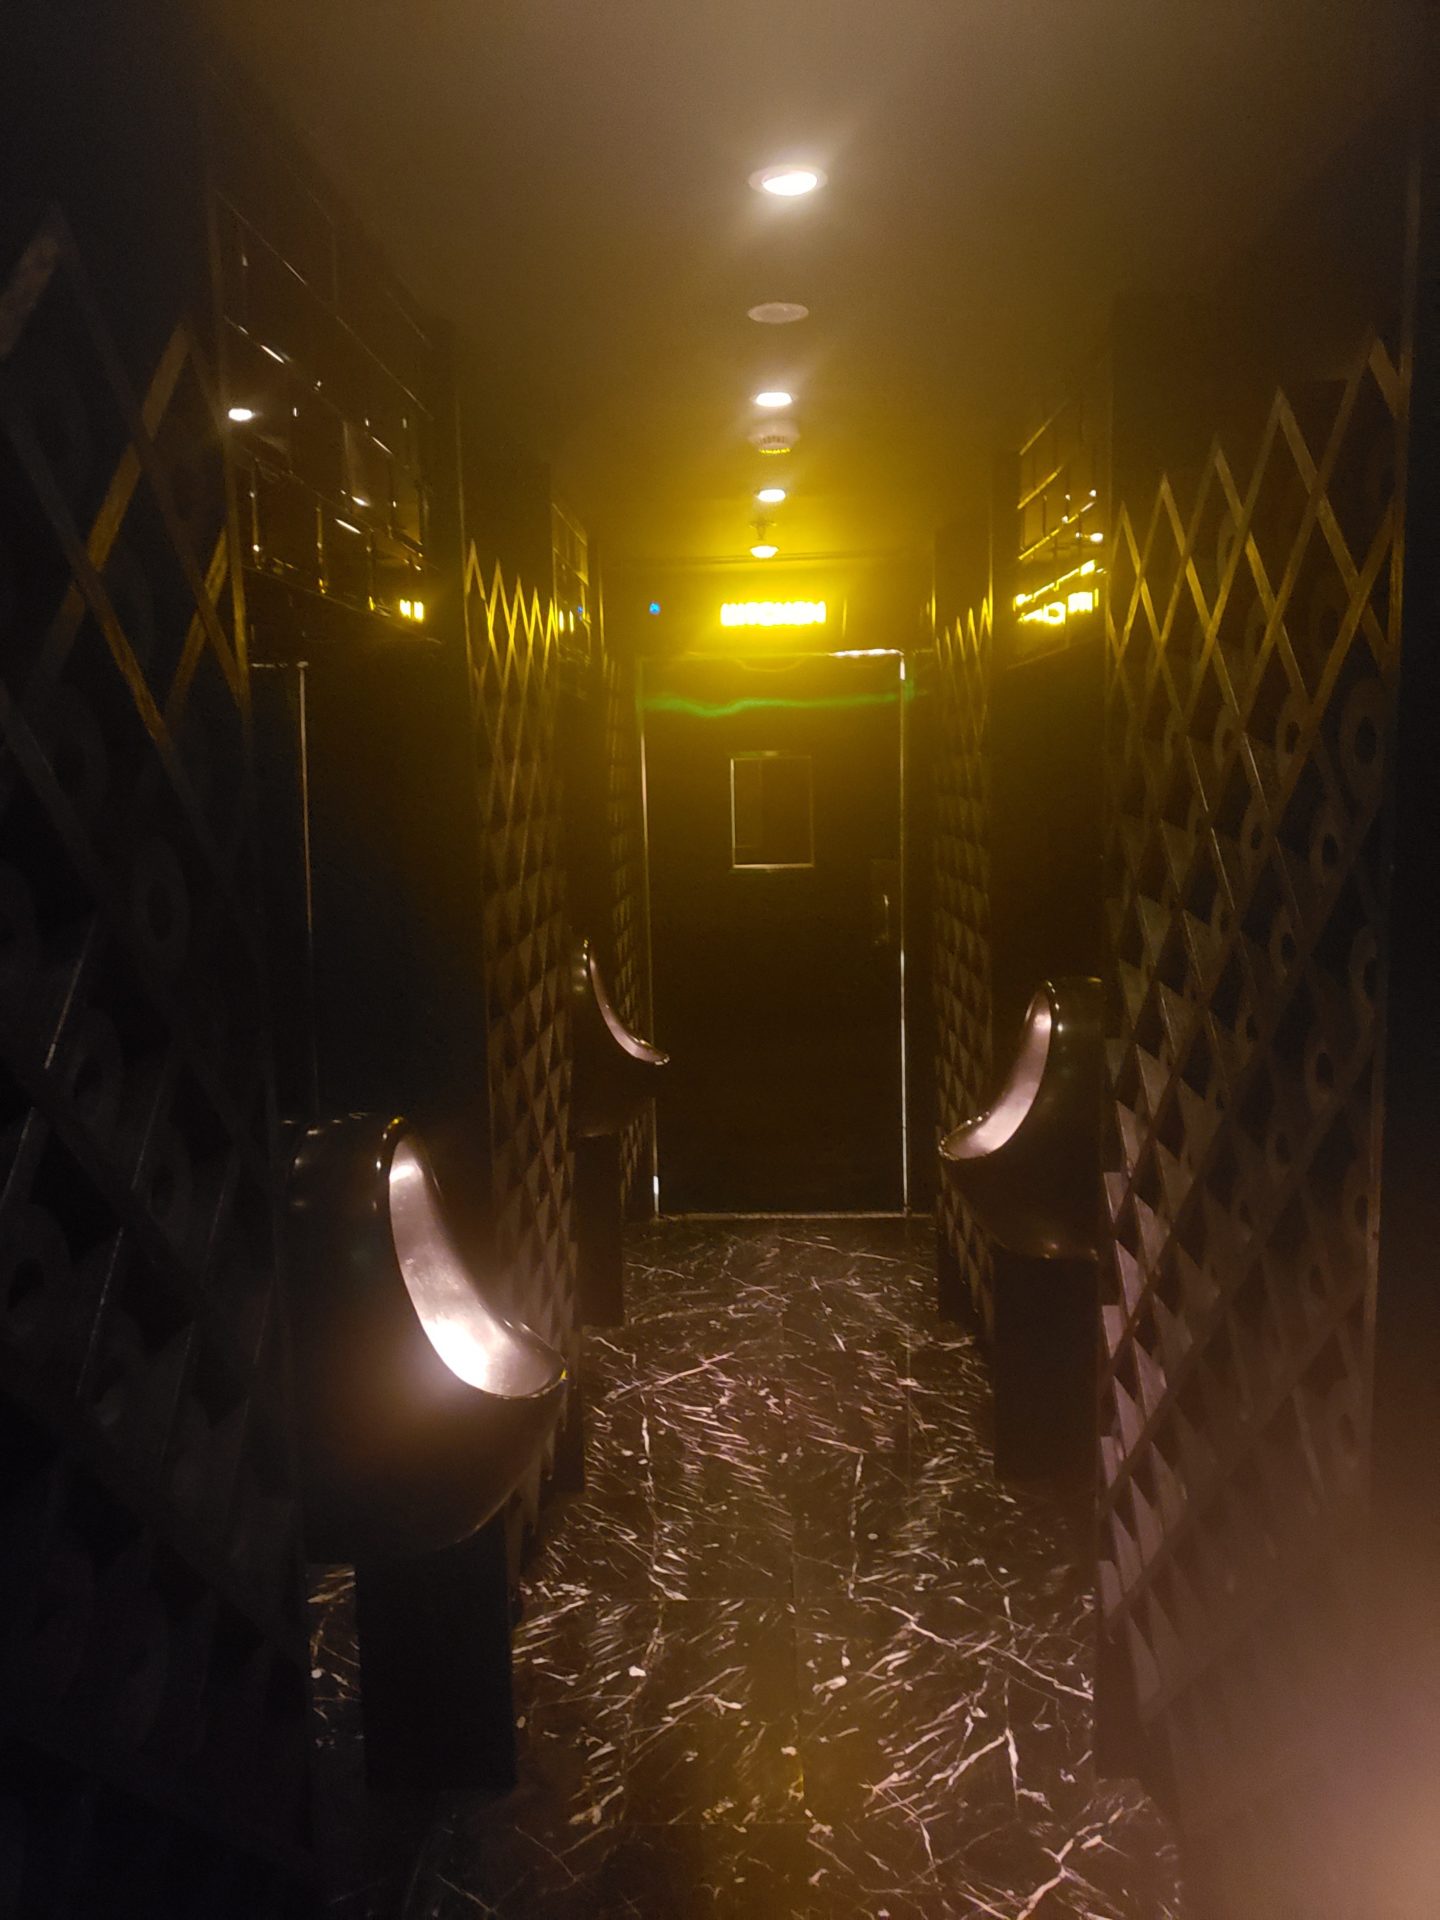 a dark hallway with urinals